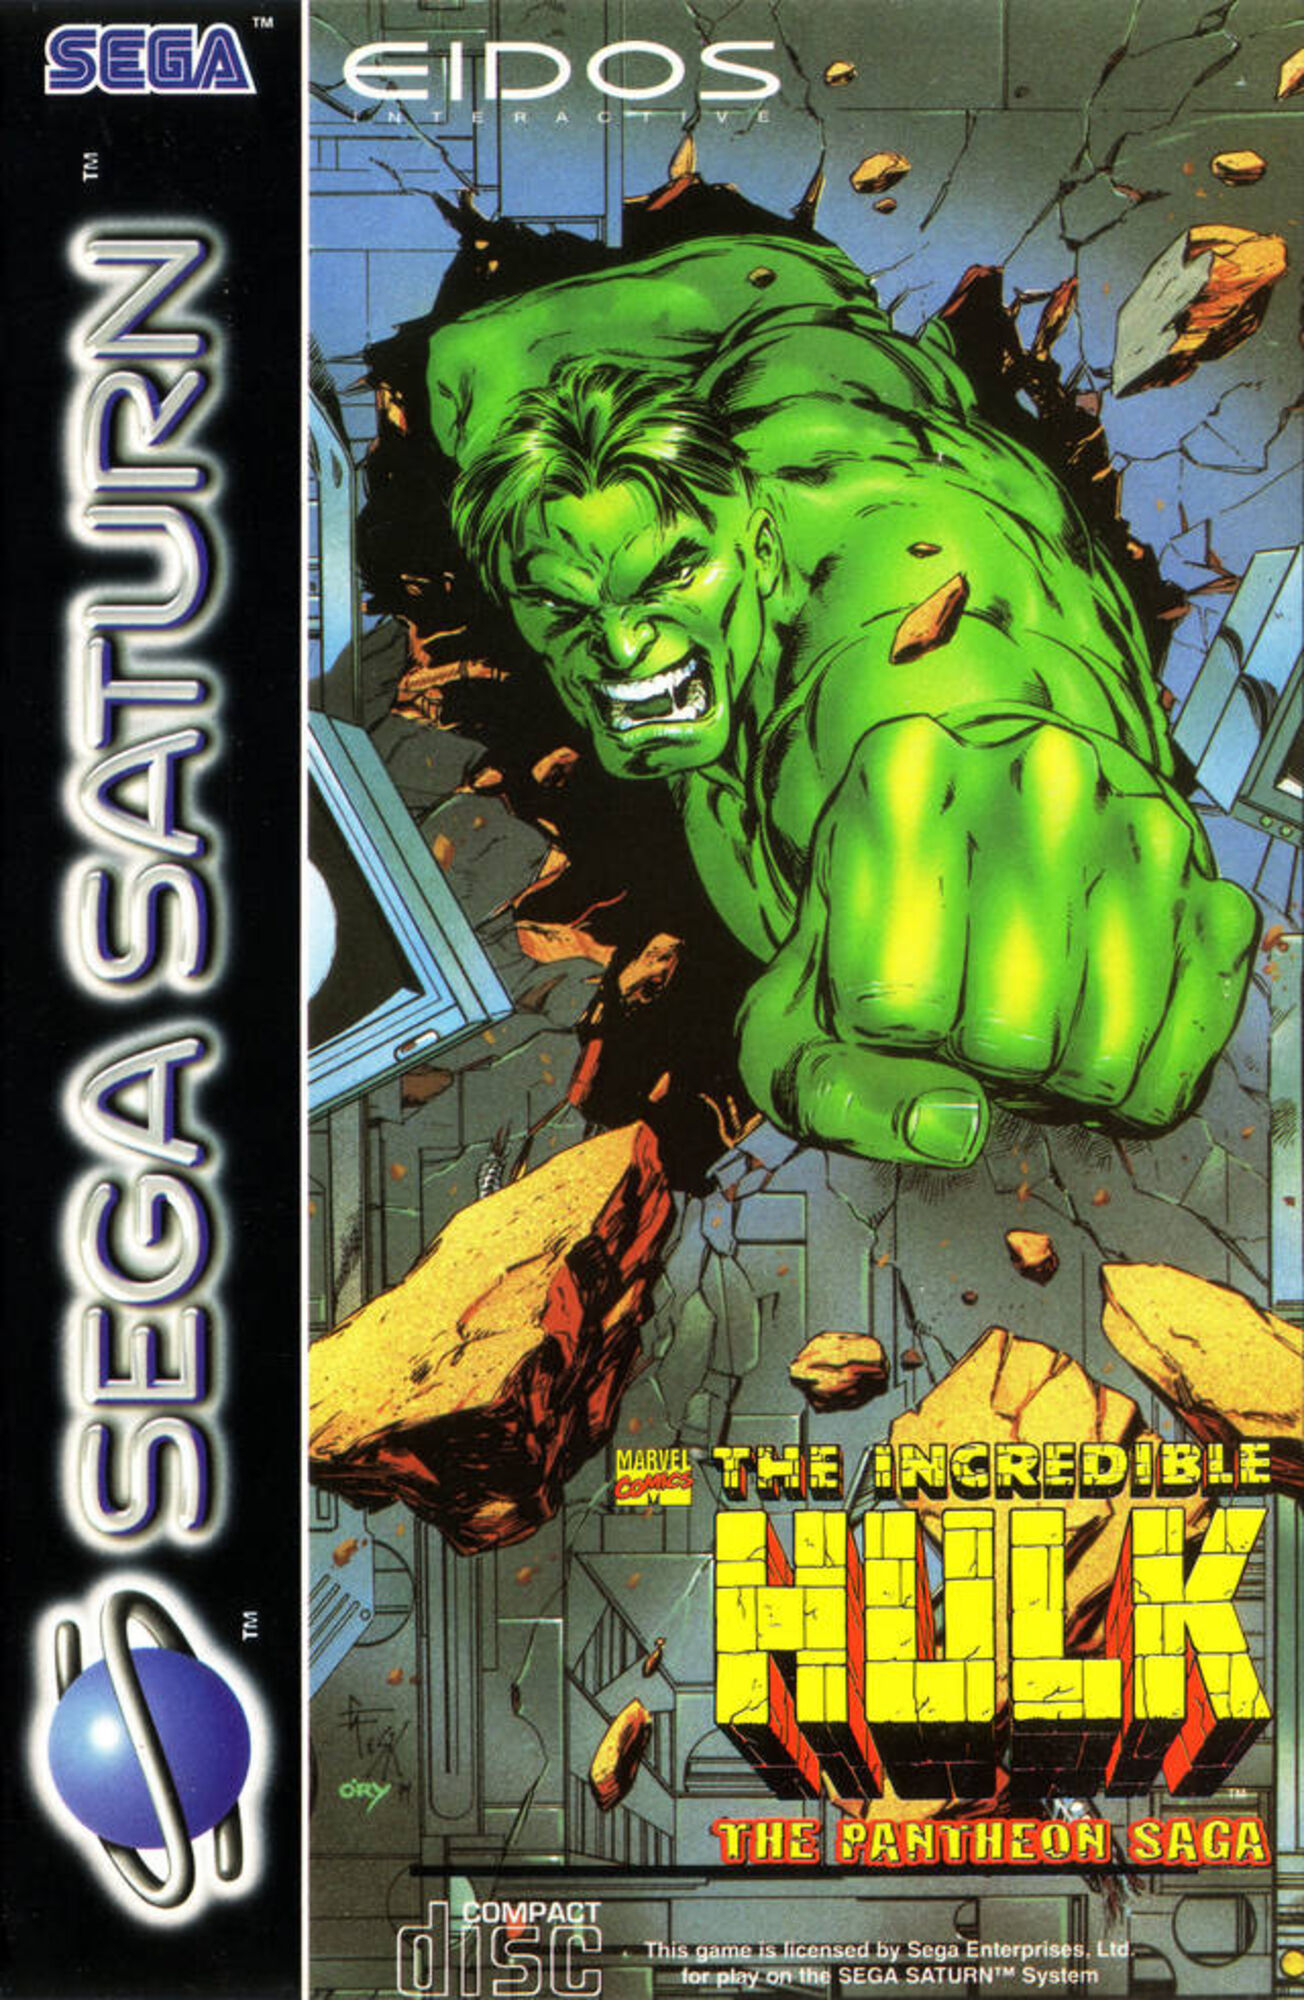 download space hulk sega saturn